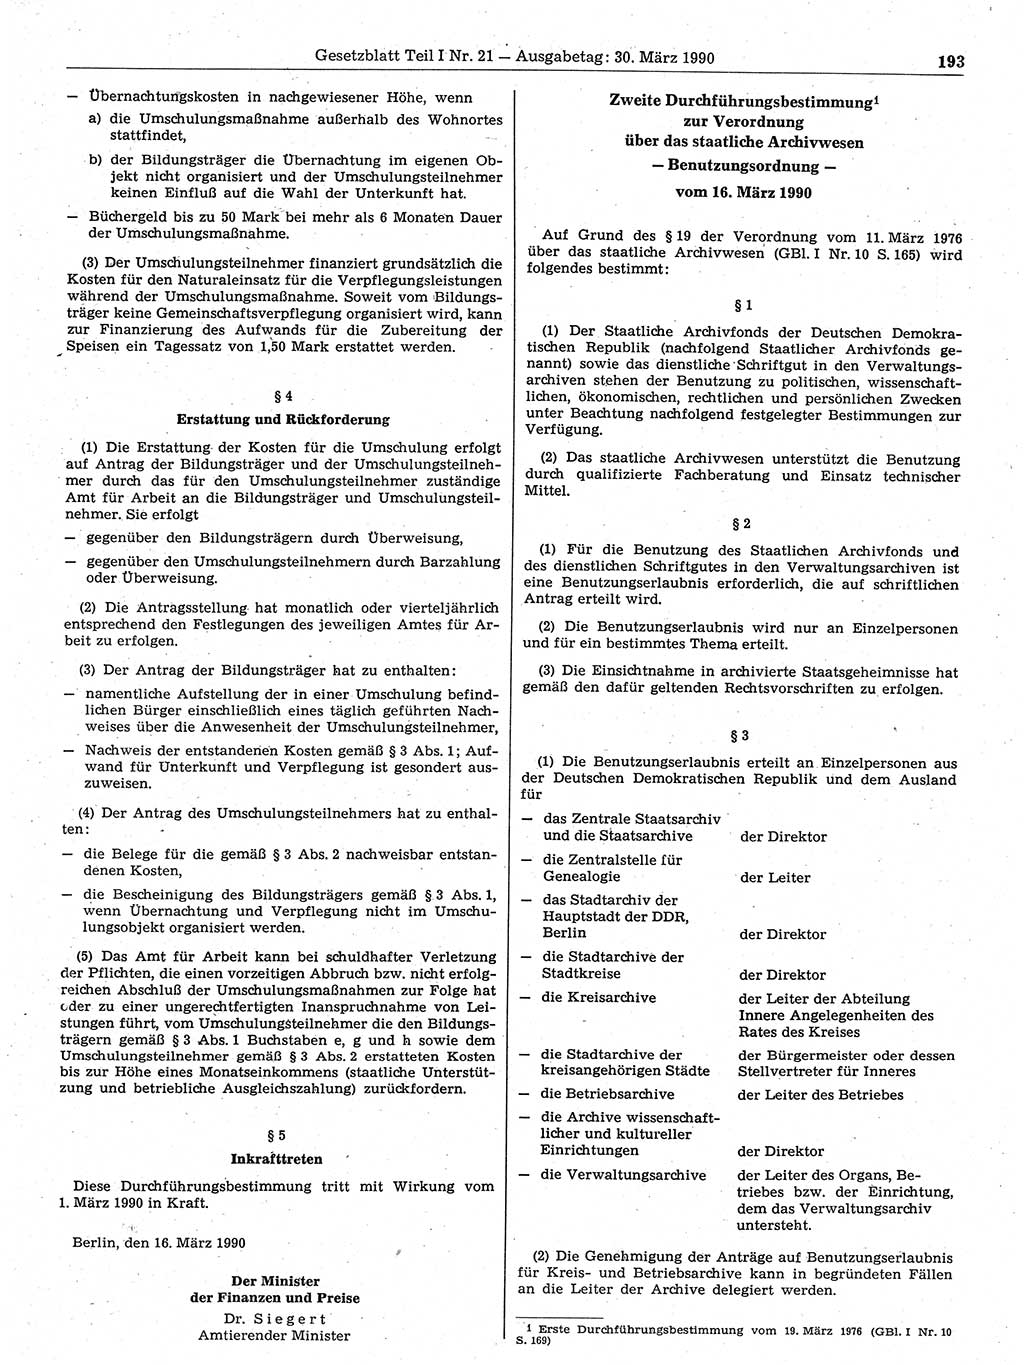 Gesetzblatt (GBl.) der Deutschen Demokratischen Republik (DDR) Teil Ⅰ 1990, Seite 193 (GBl. DDR Ⅰ 1990, S. 193)